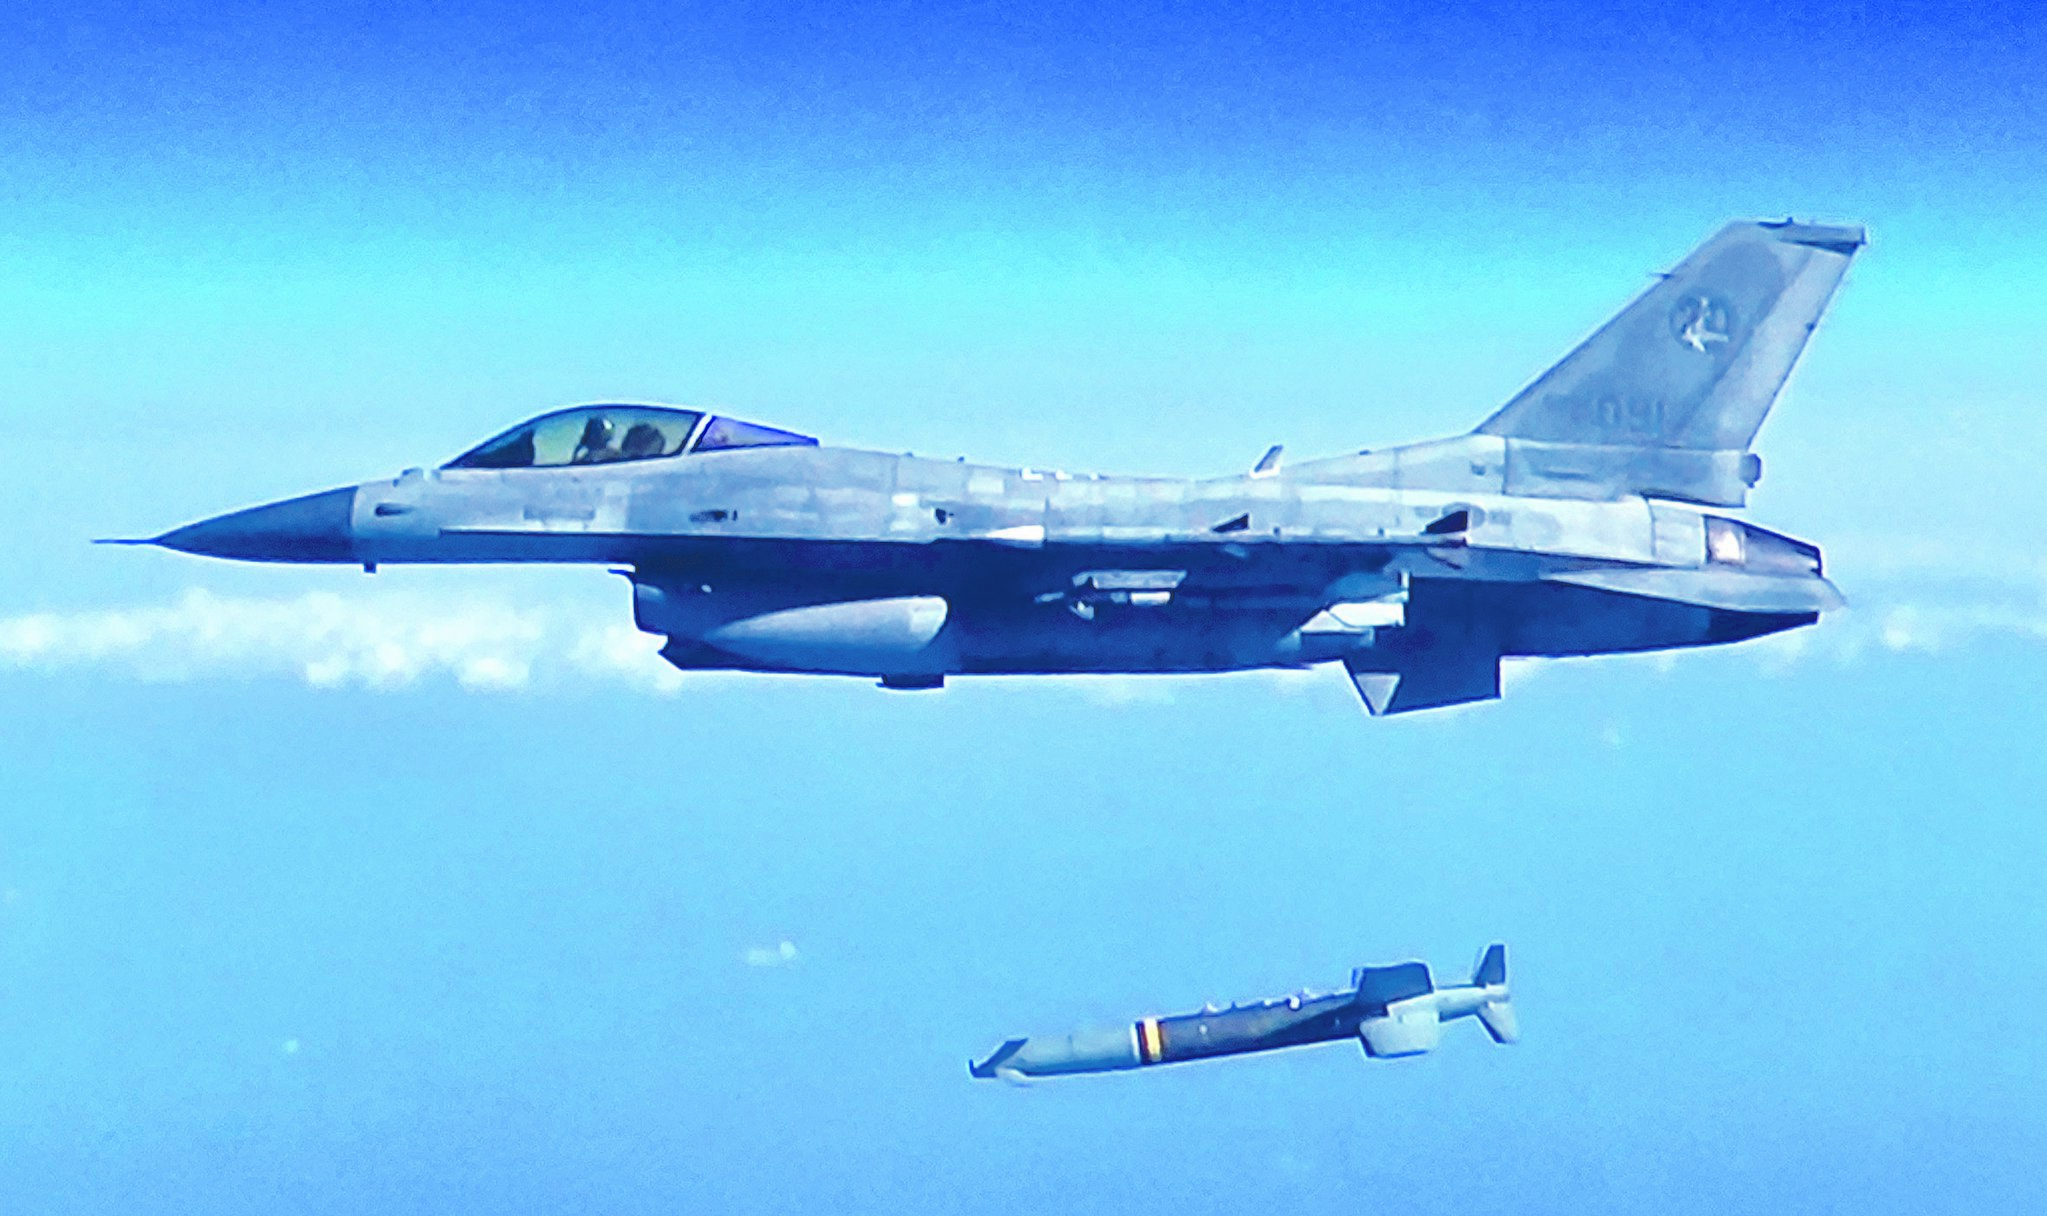  KF-16에서 SPICE-2000을 발사하는 장면. 공군 영상 캡처